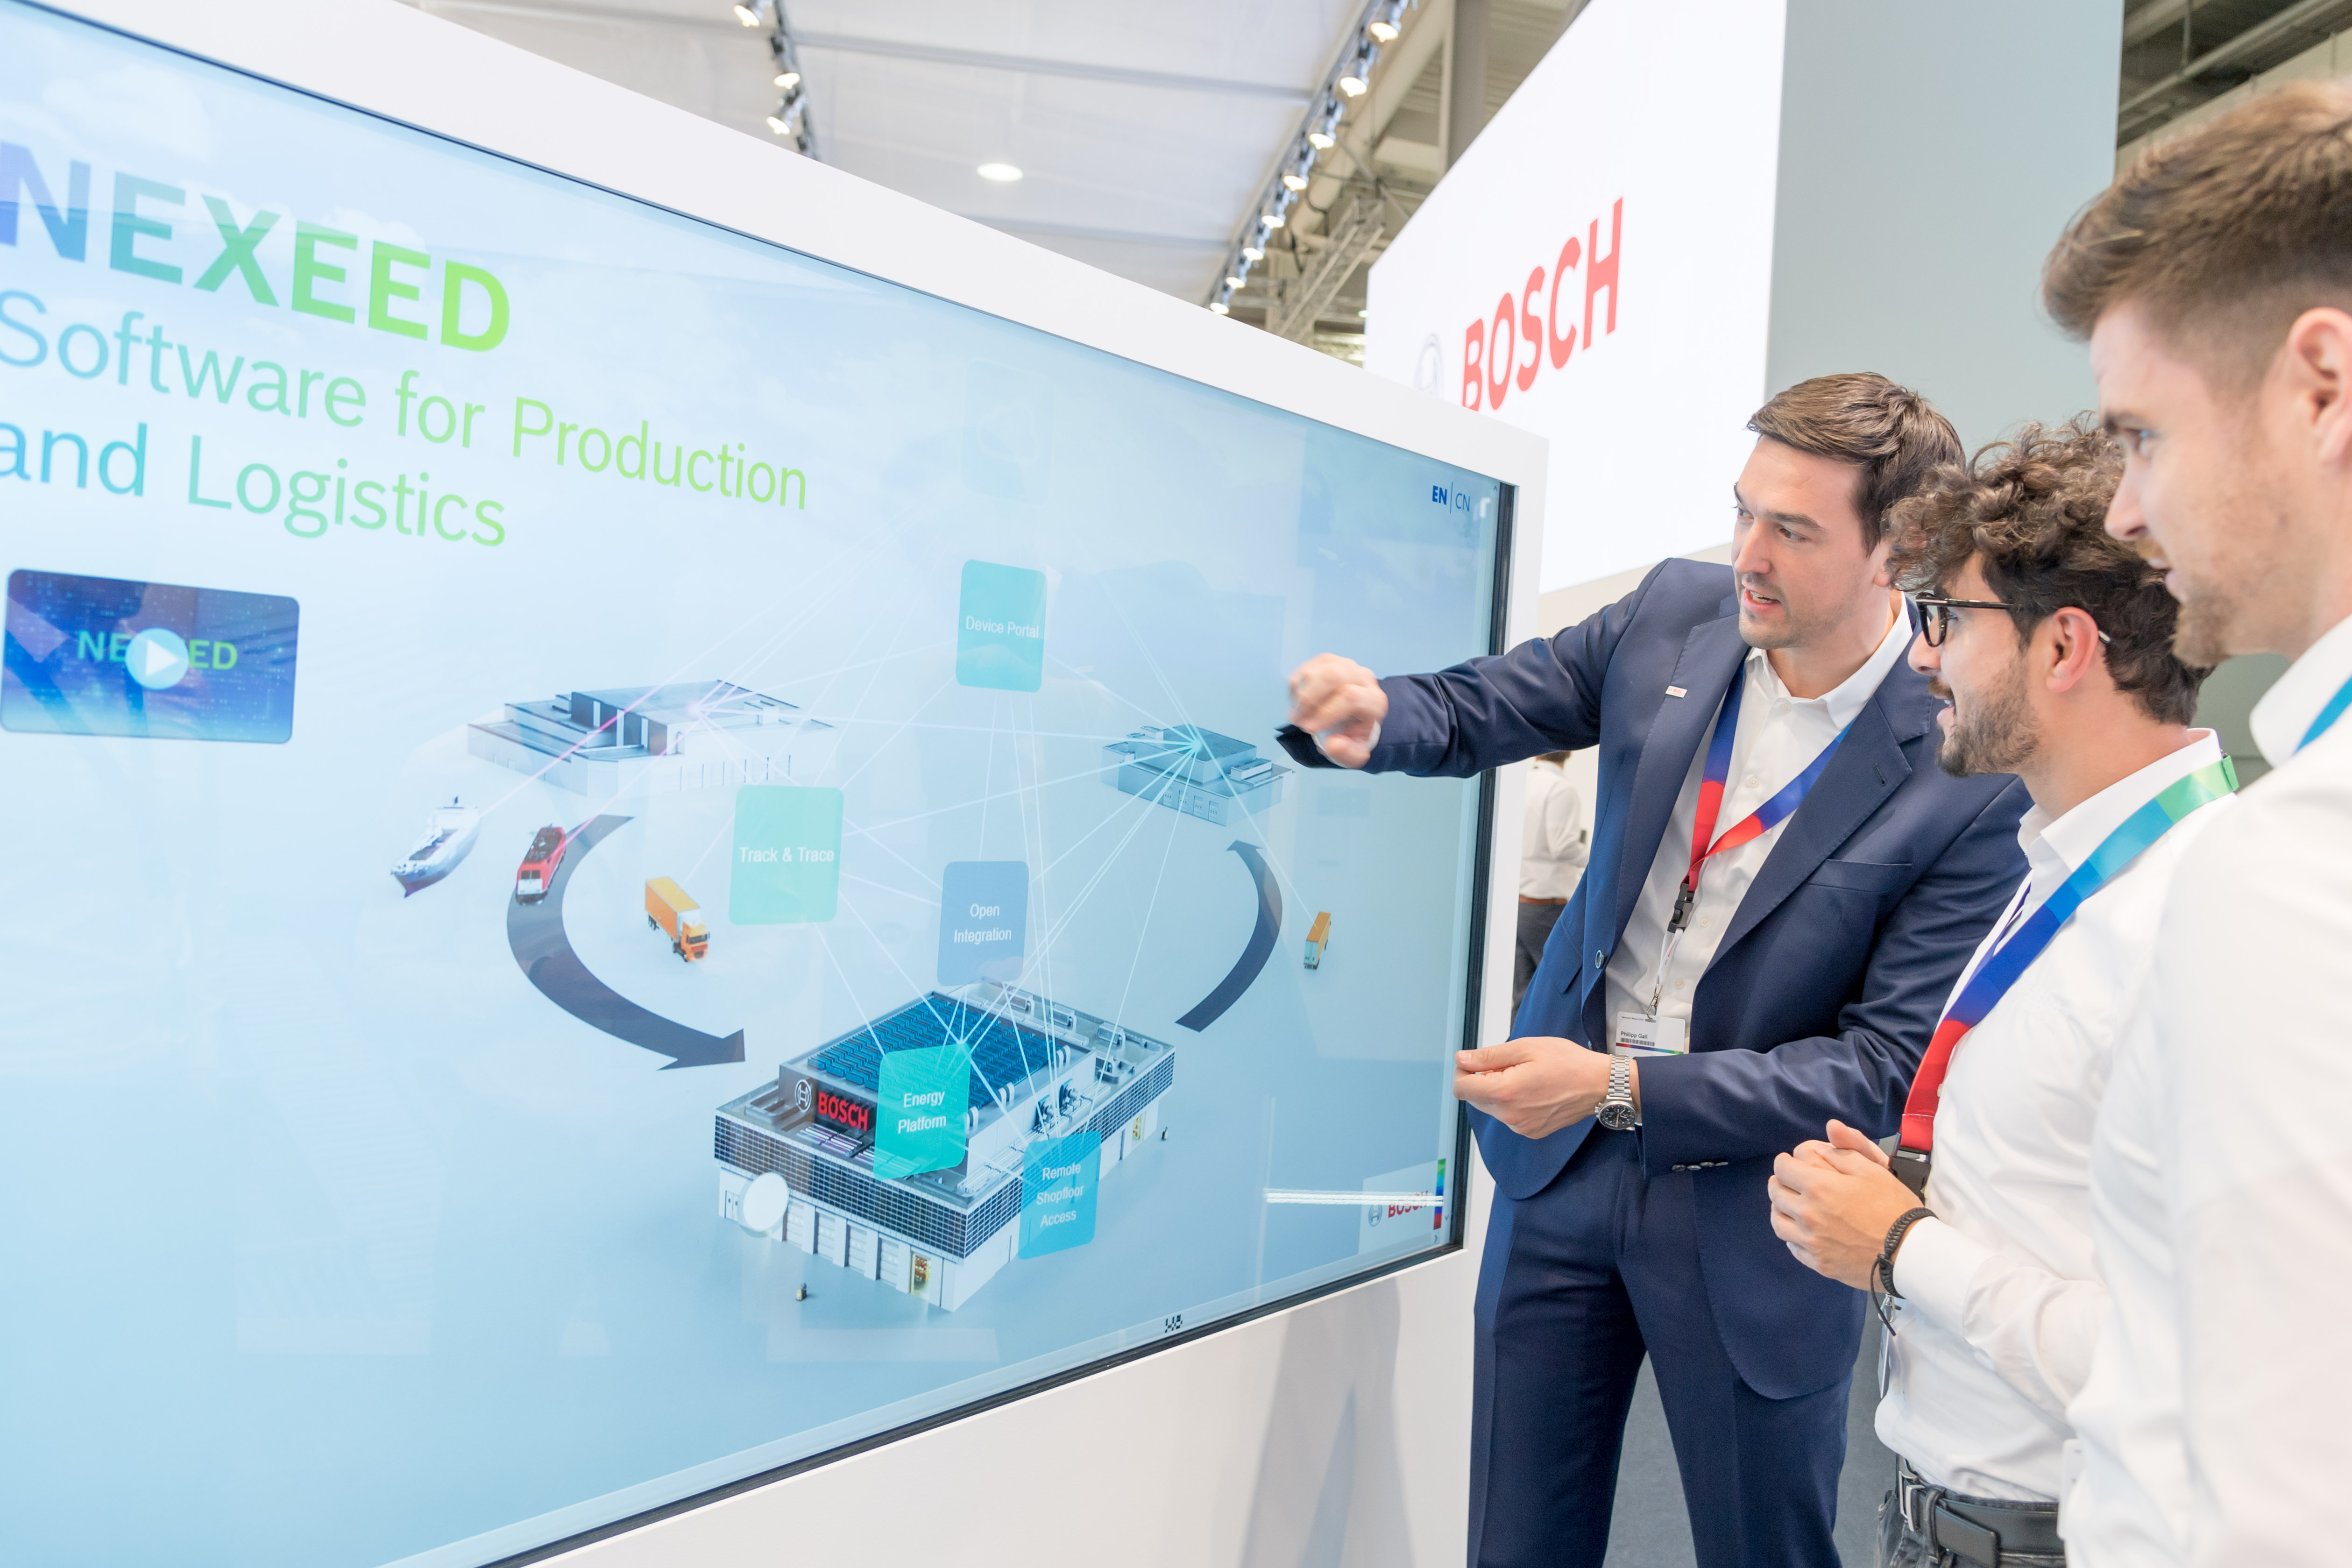 Bosch zeigt auf der Hannover Messe 2019 ein umfassendes Software-Portfolio für Fertigung und Logistik (Nexeed).